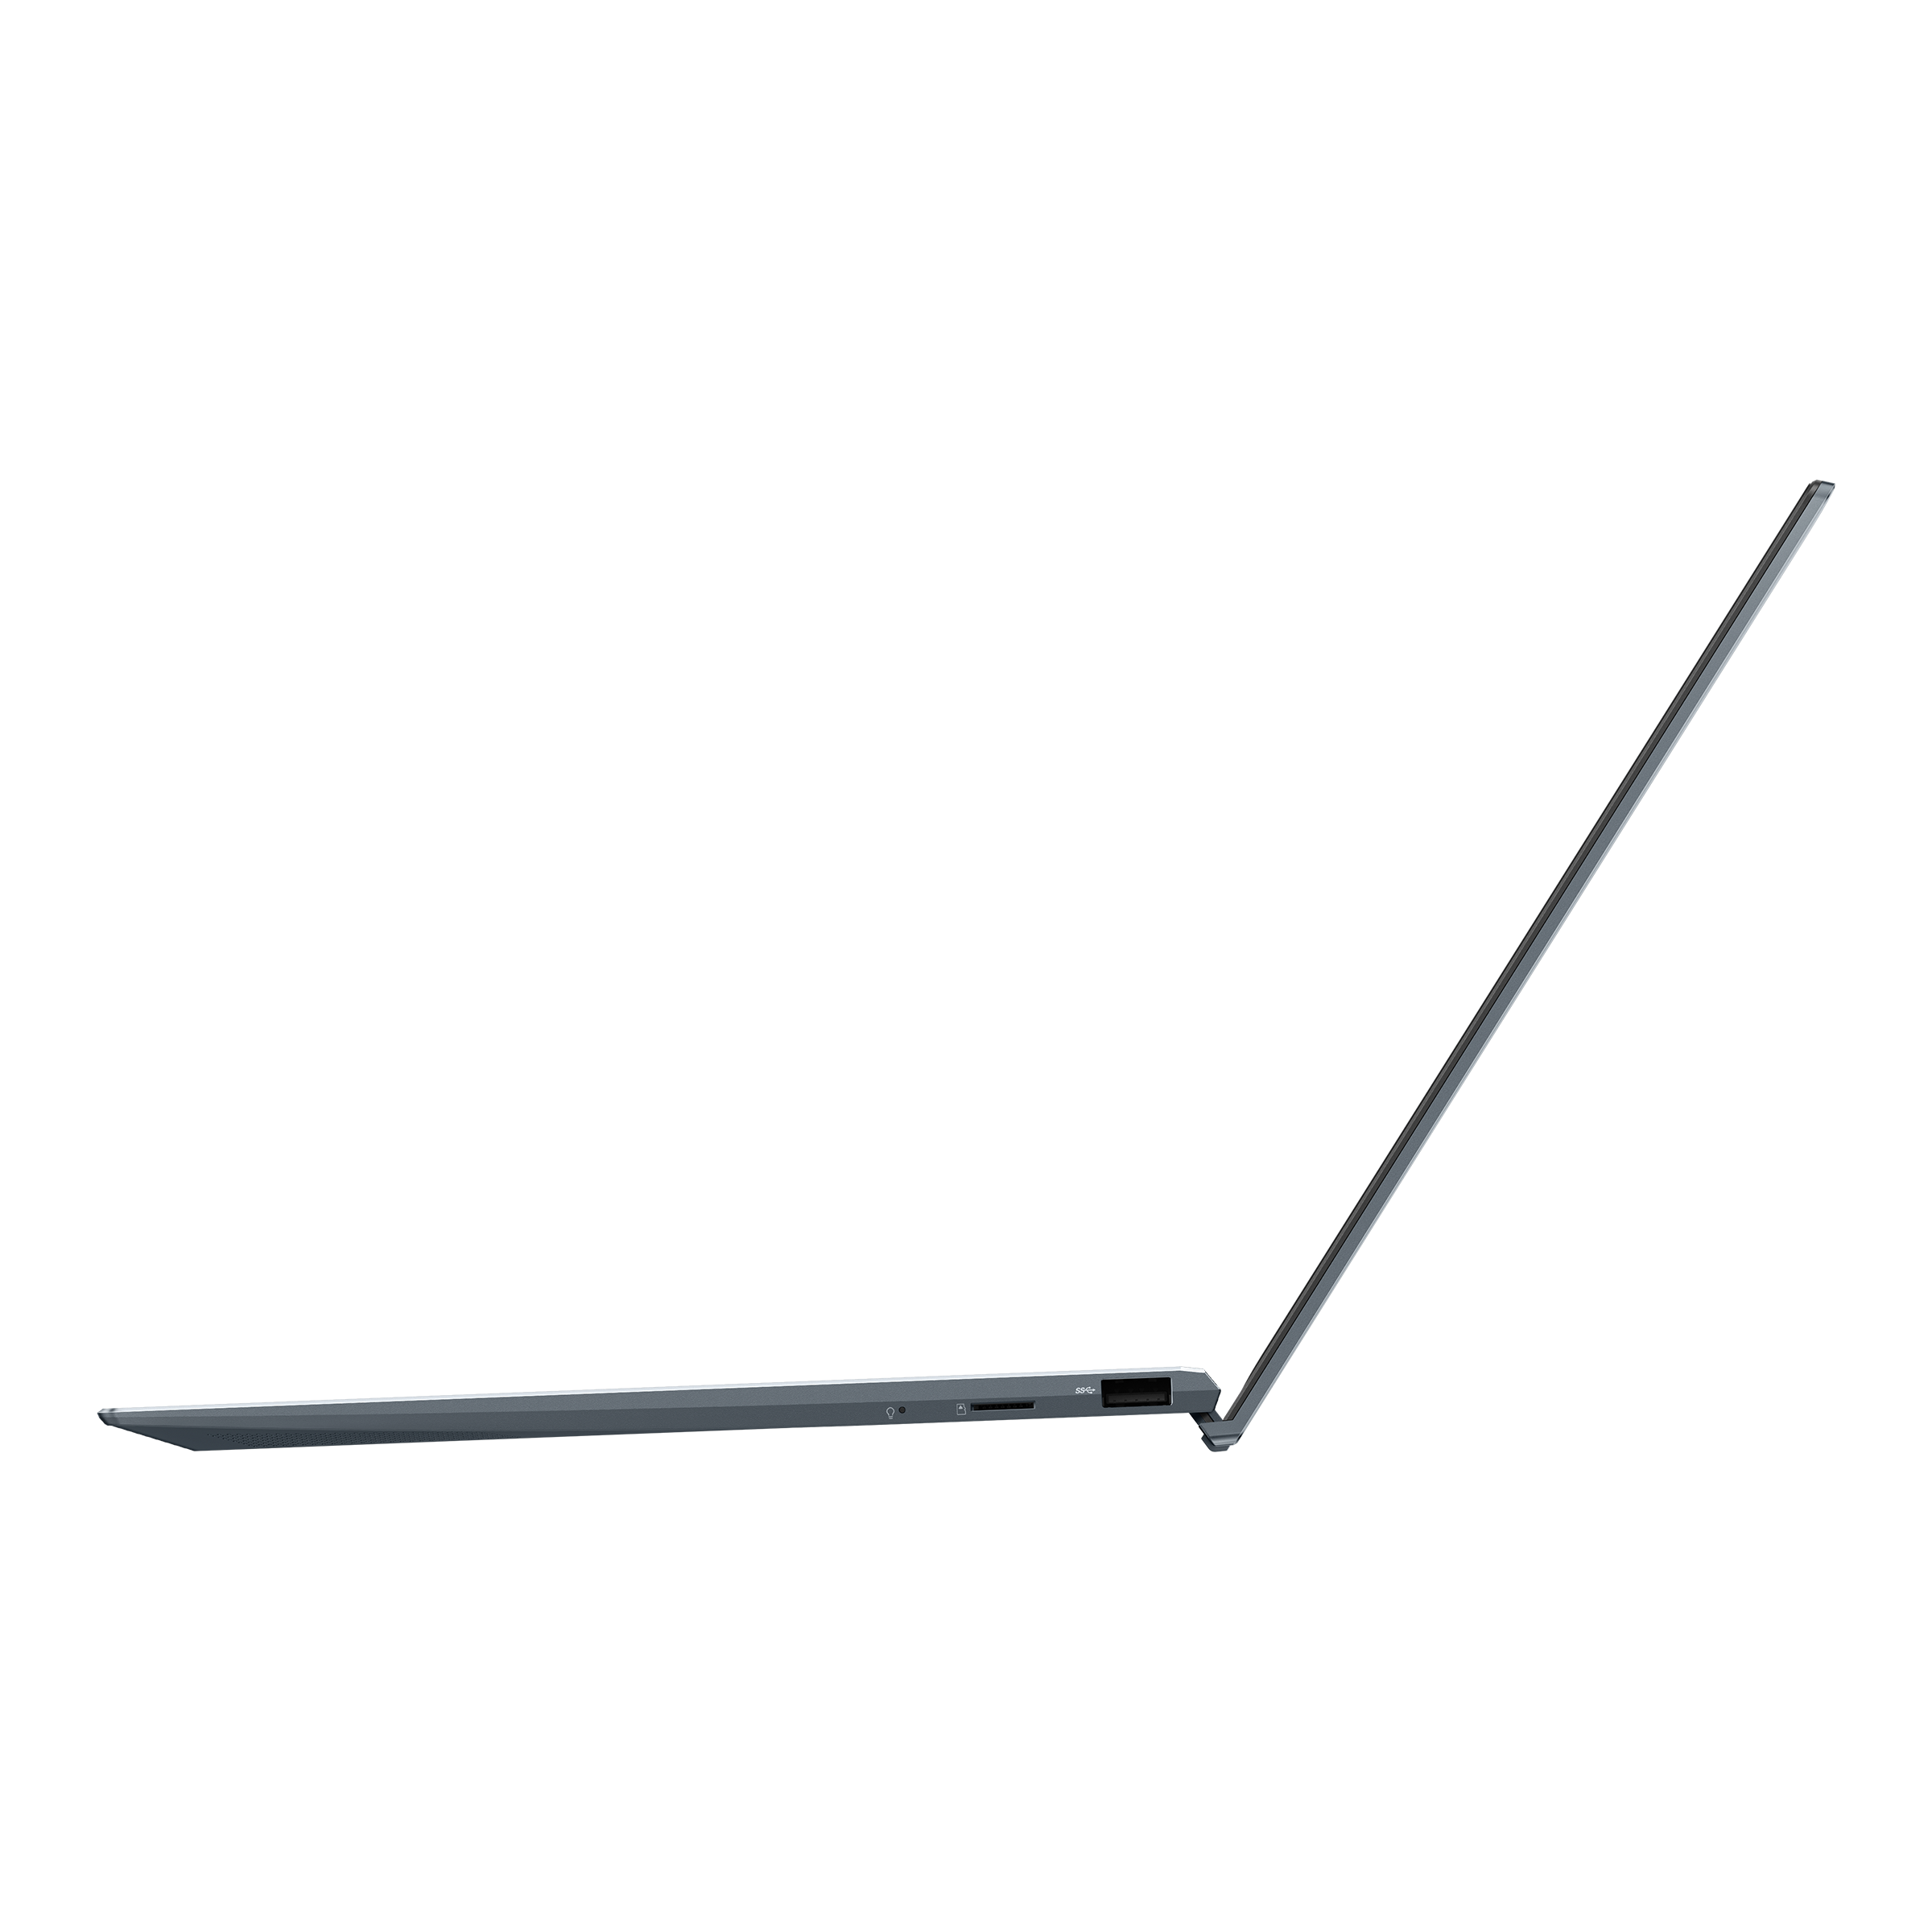 ZenBook 14 UX425EA - Belleza atemporal, portabilidad sin esfuerzo